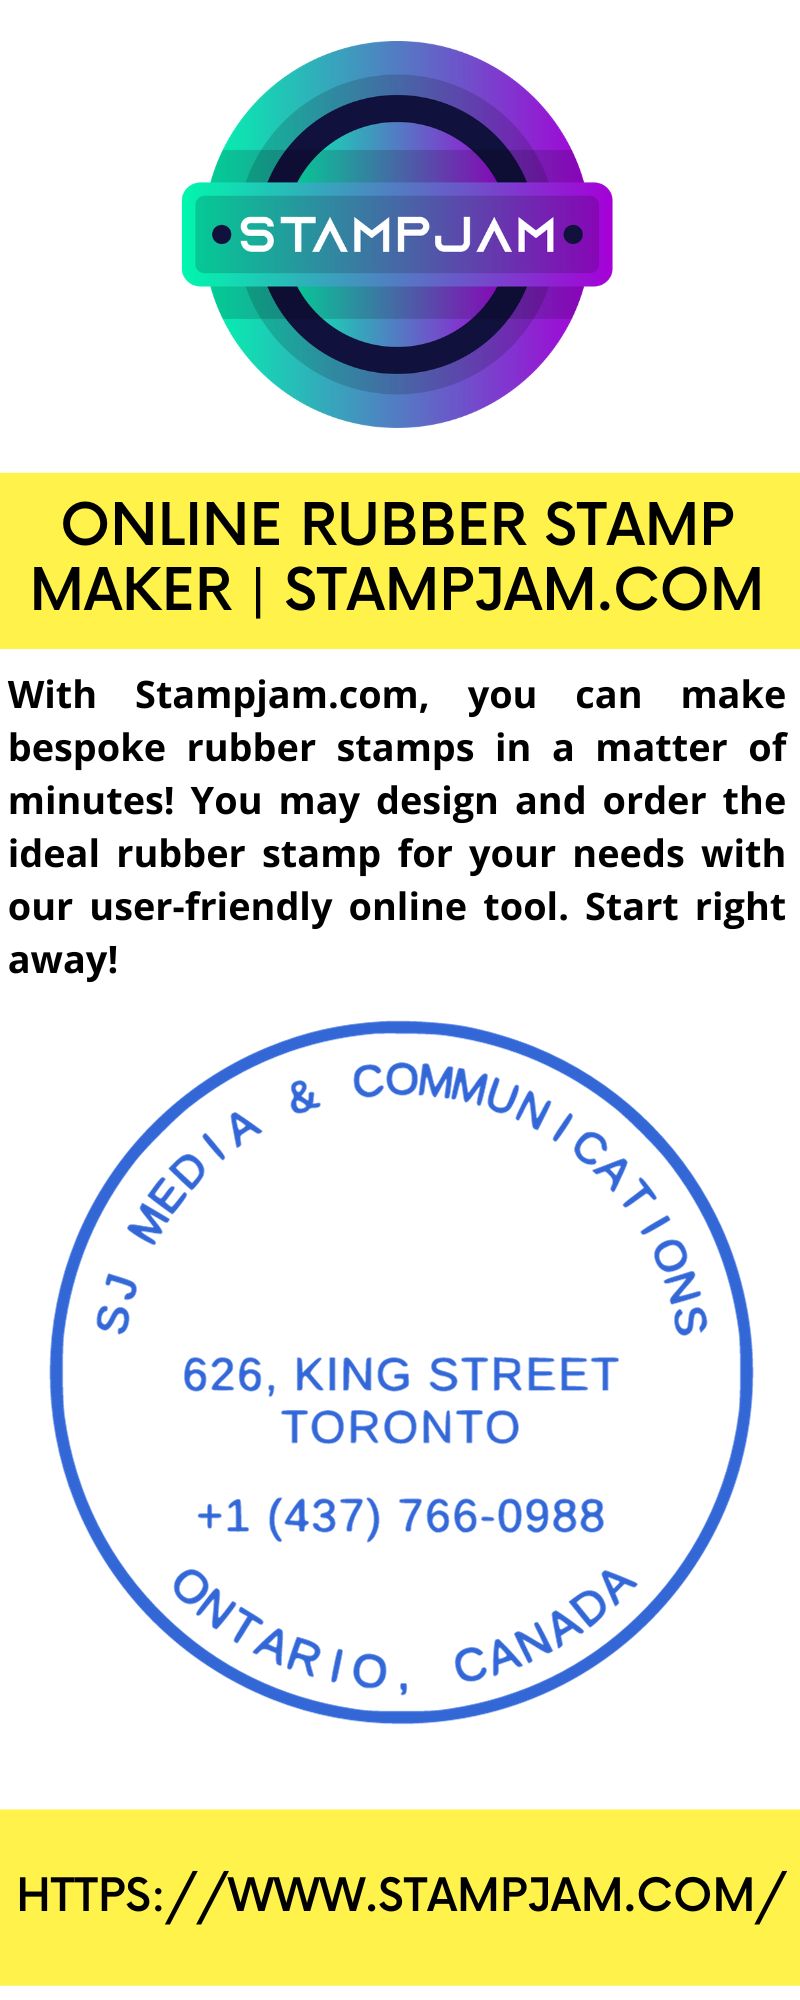 Online Rubber Stamp Maker  Stampjam.com by stampjam on DeviantArt